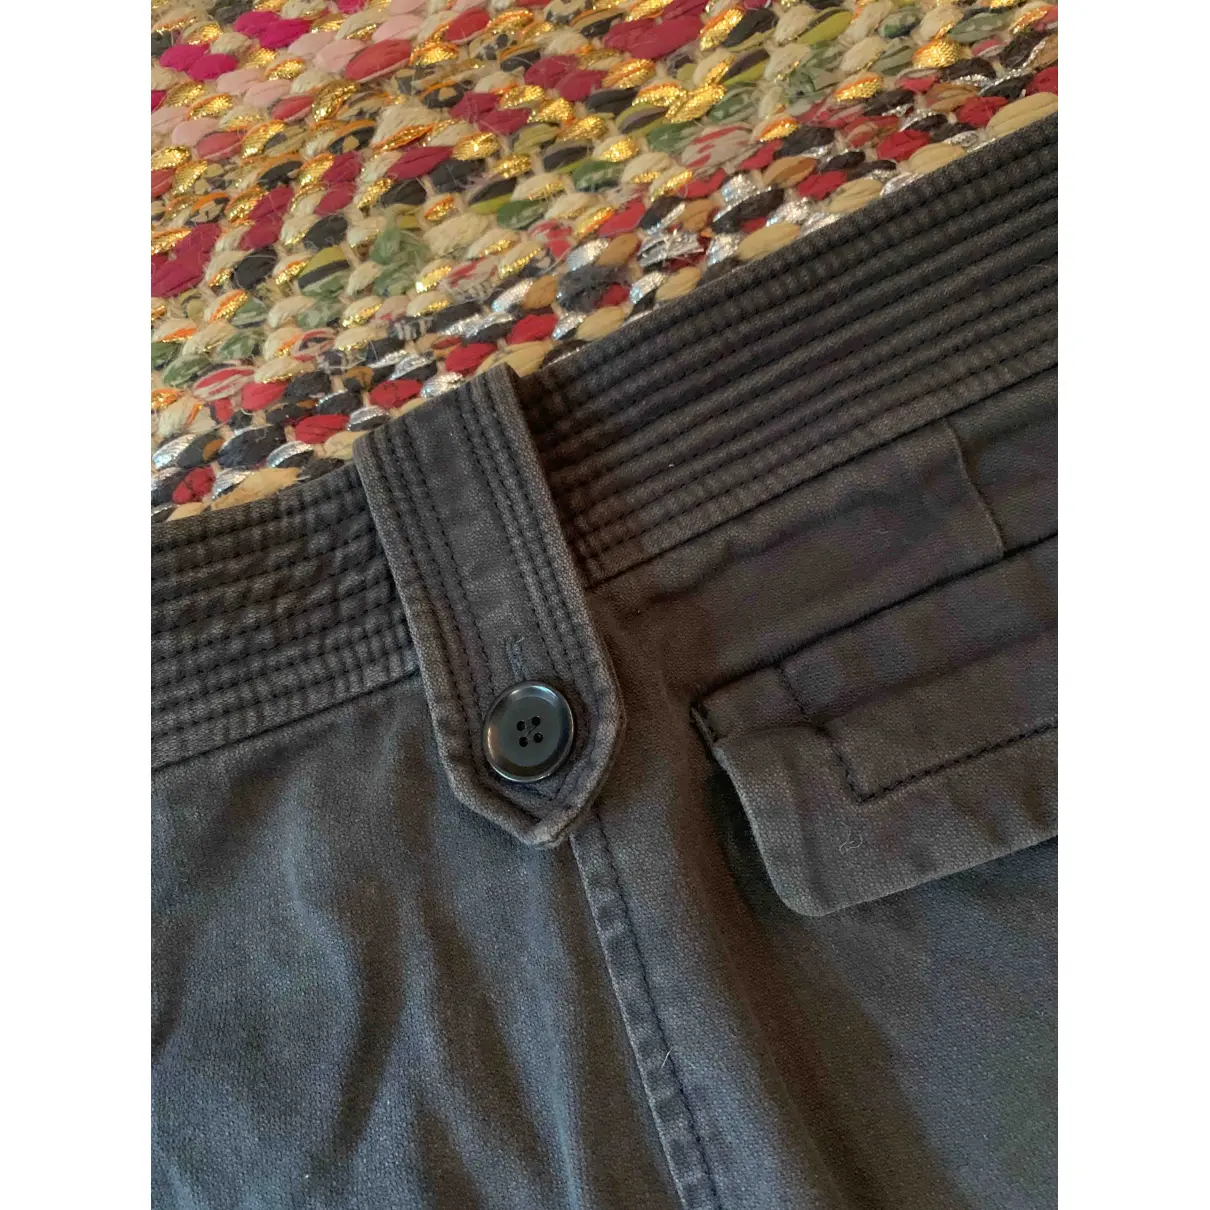 Buy Isabel Marant Etoile Large pants online